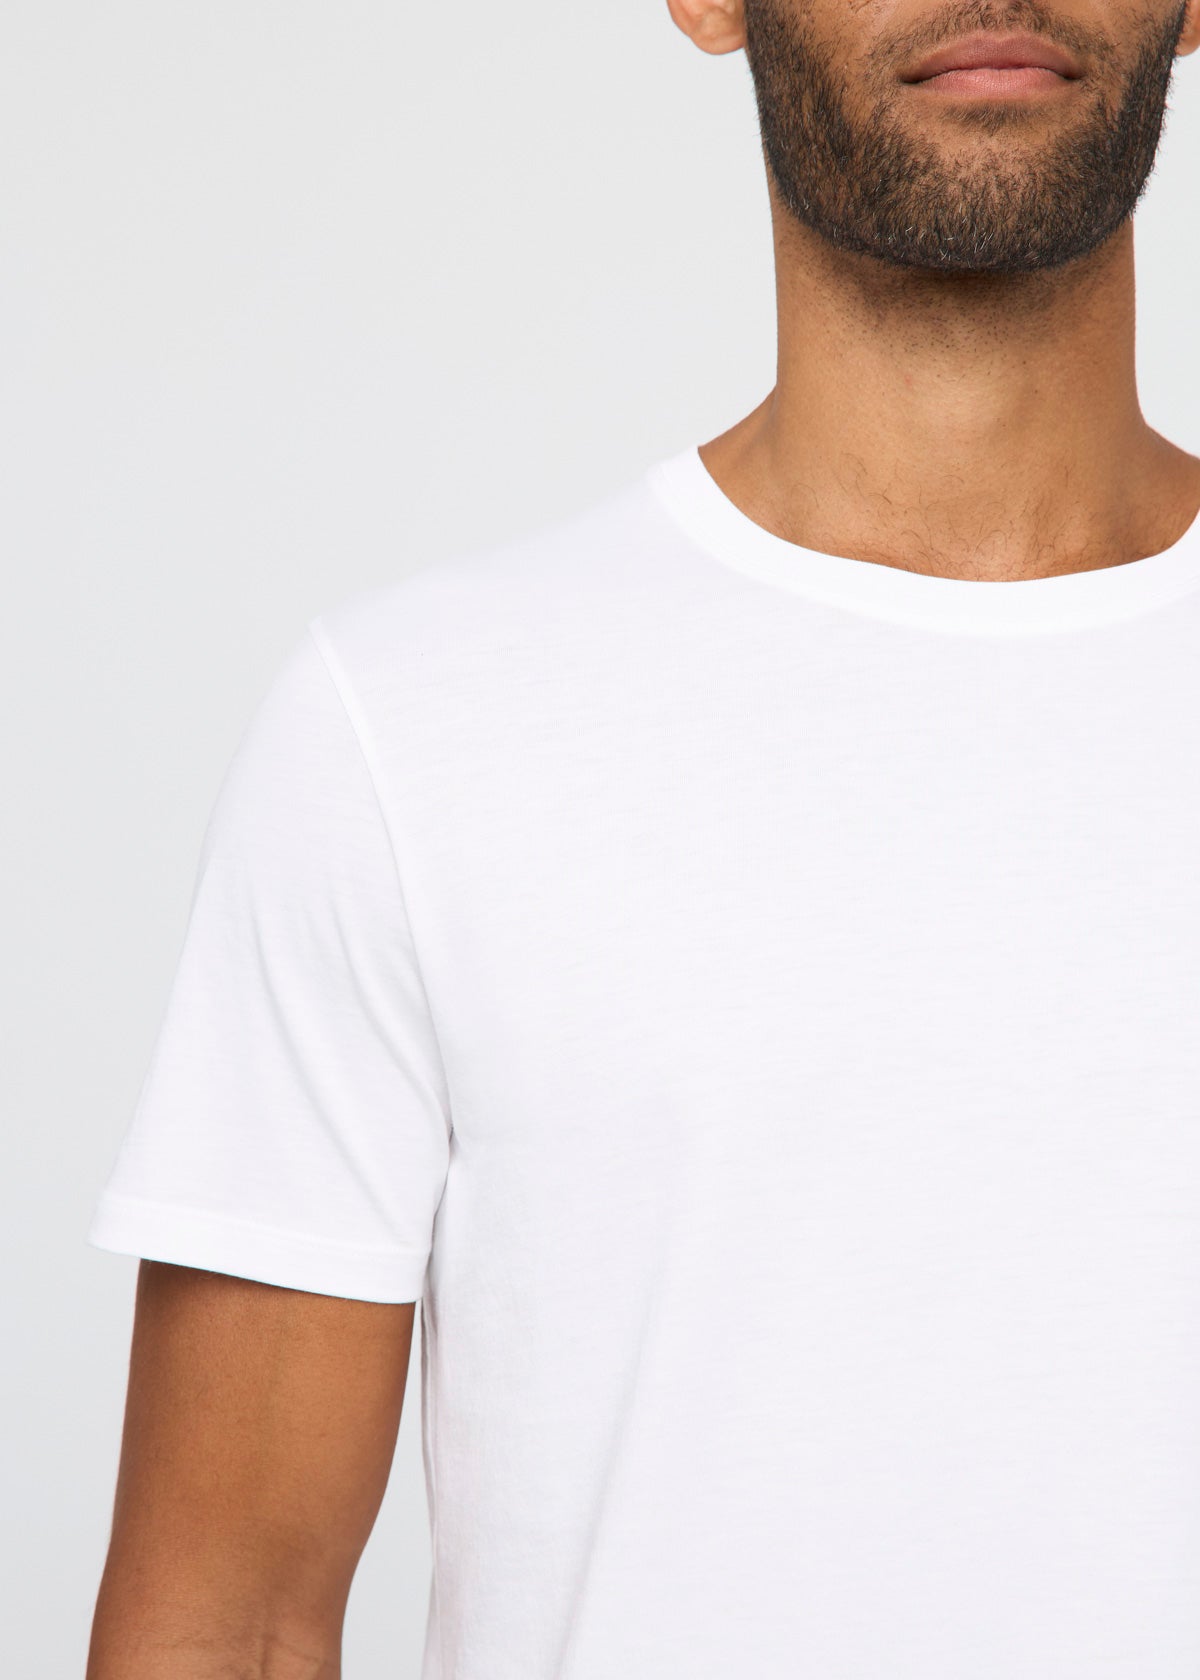 mens 100% Pima cotton white t-shirt neckline